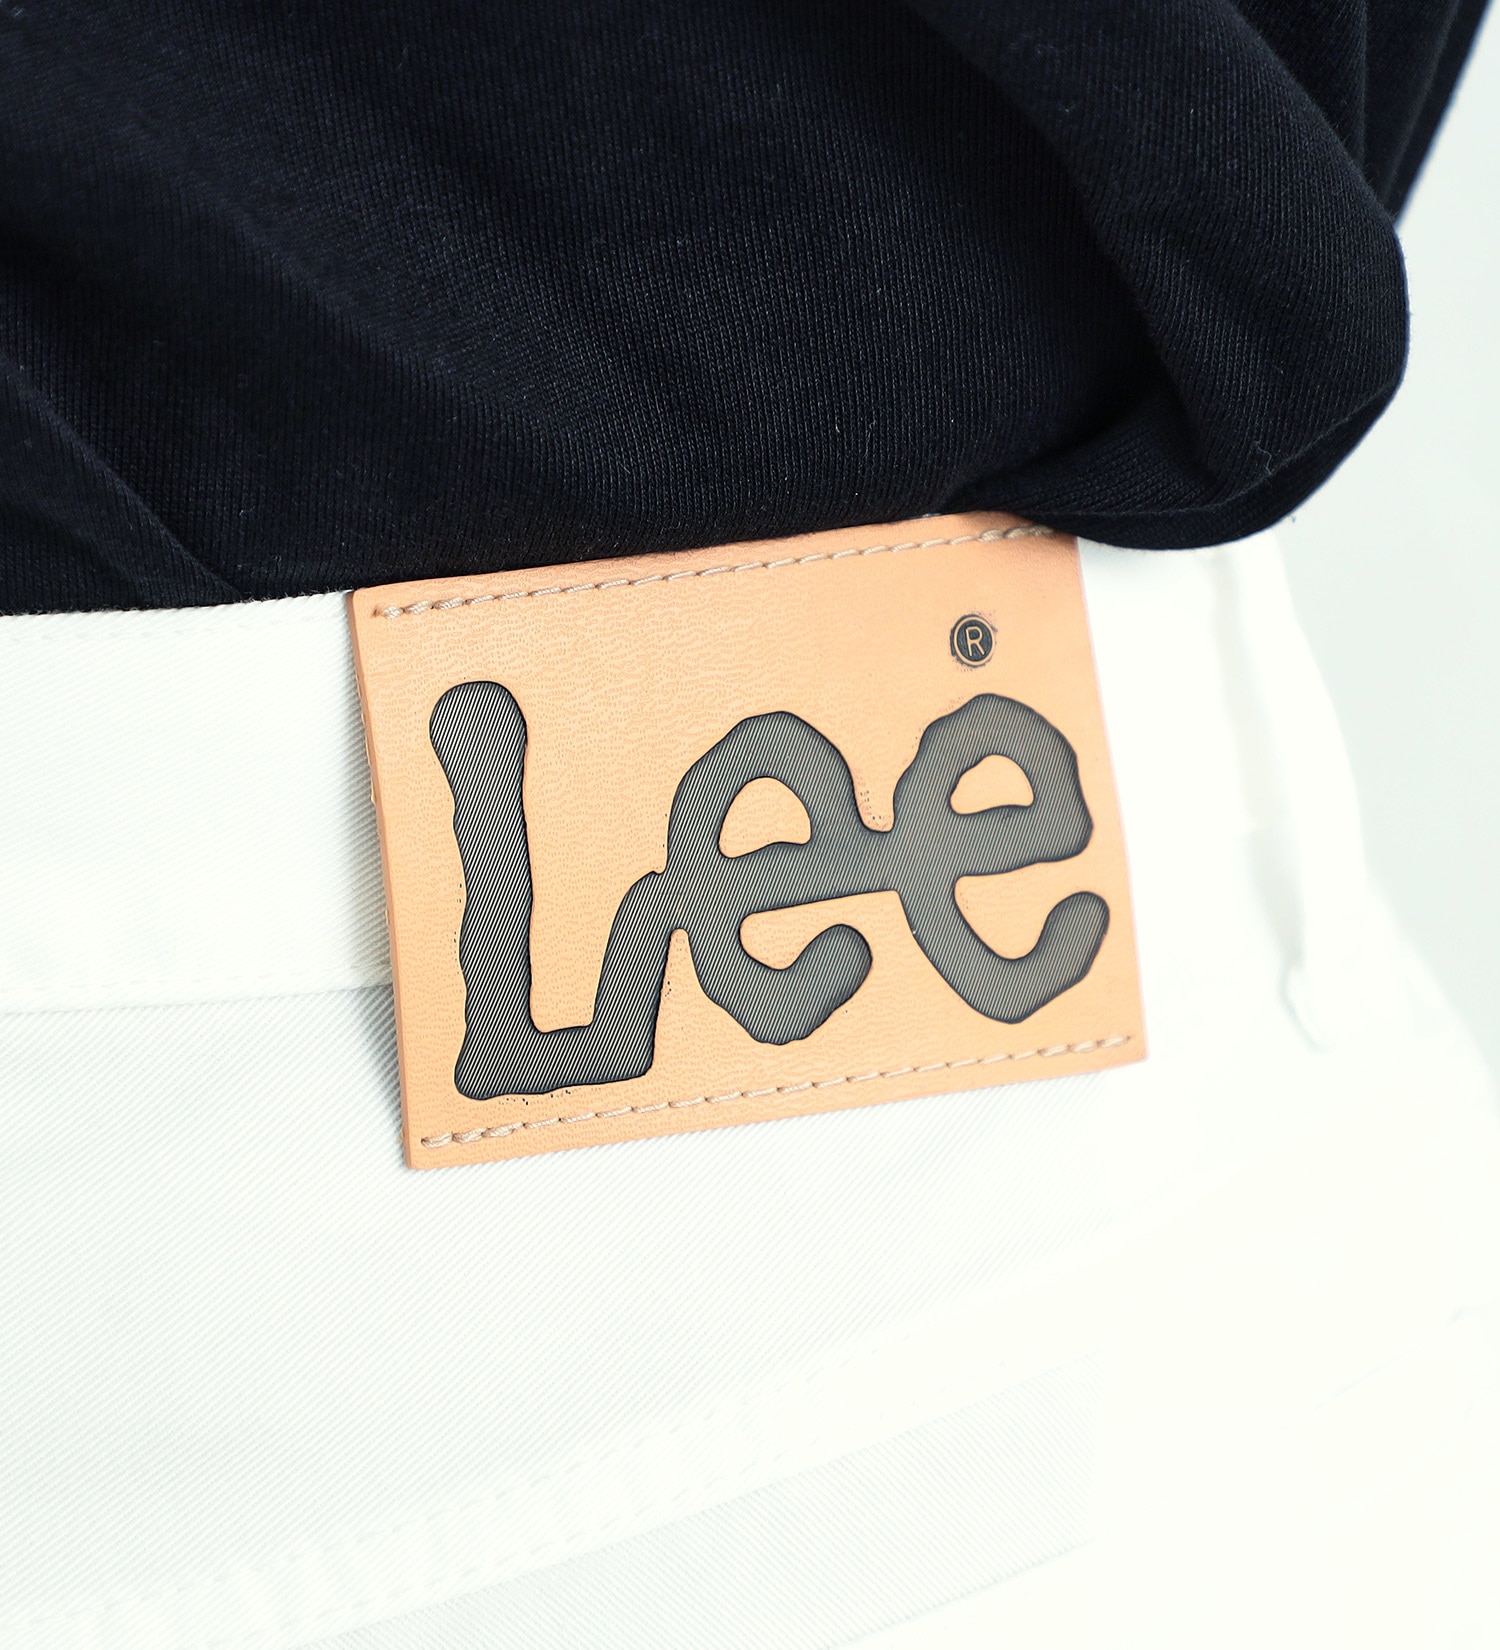 Lee(リー)の【GW SALE】【涼・COOL】ドライタッチで涼しく快適AMERICAN STANDARD 201 ストレート|パンツ/パンツ/メンズ|ホワイト